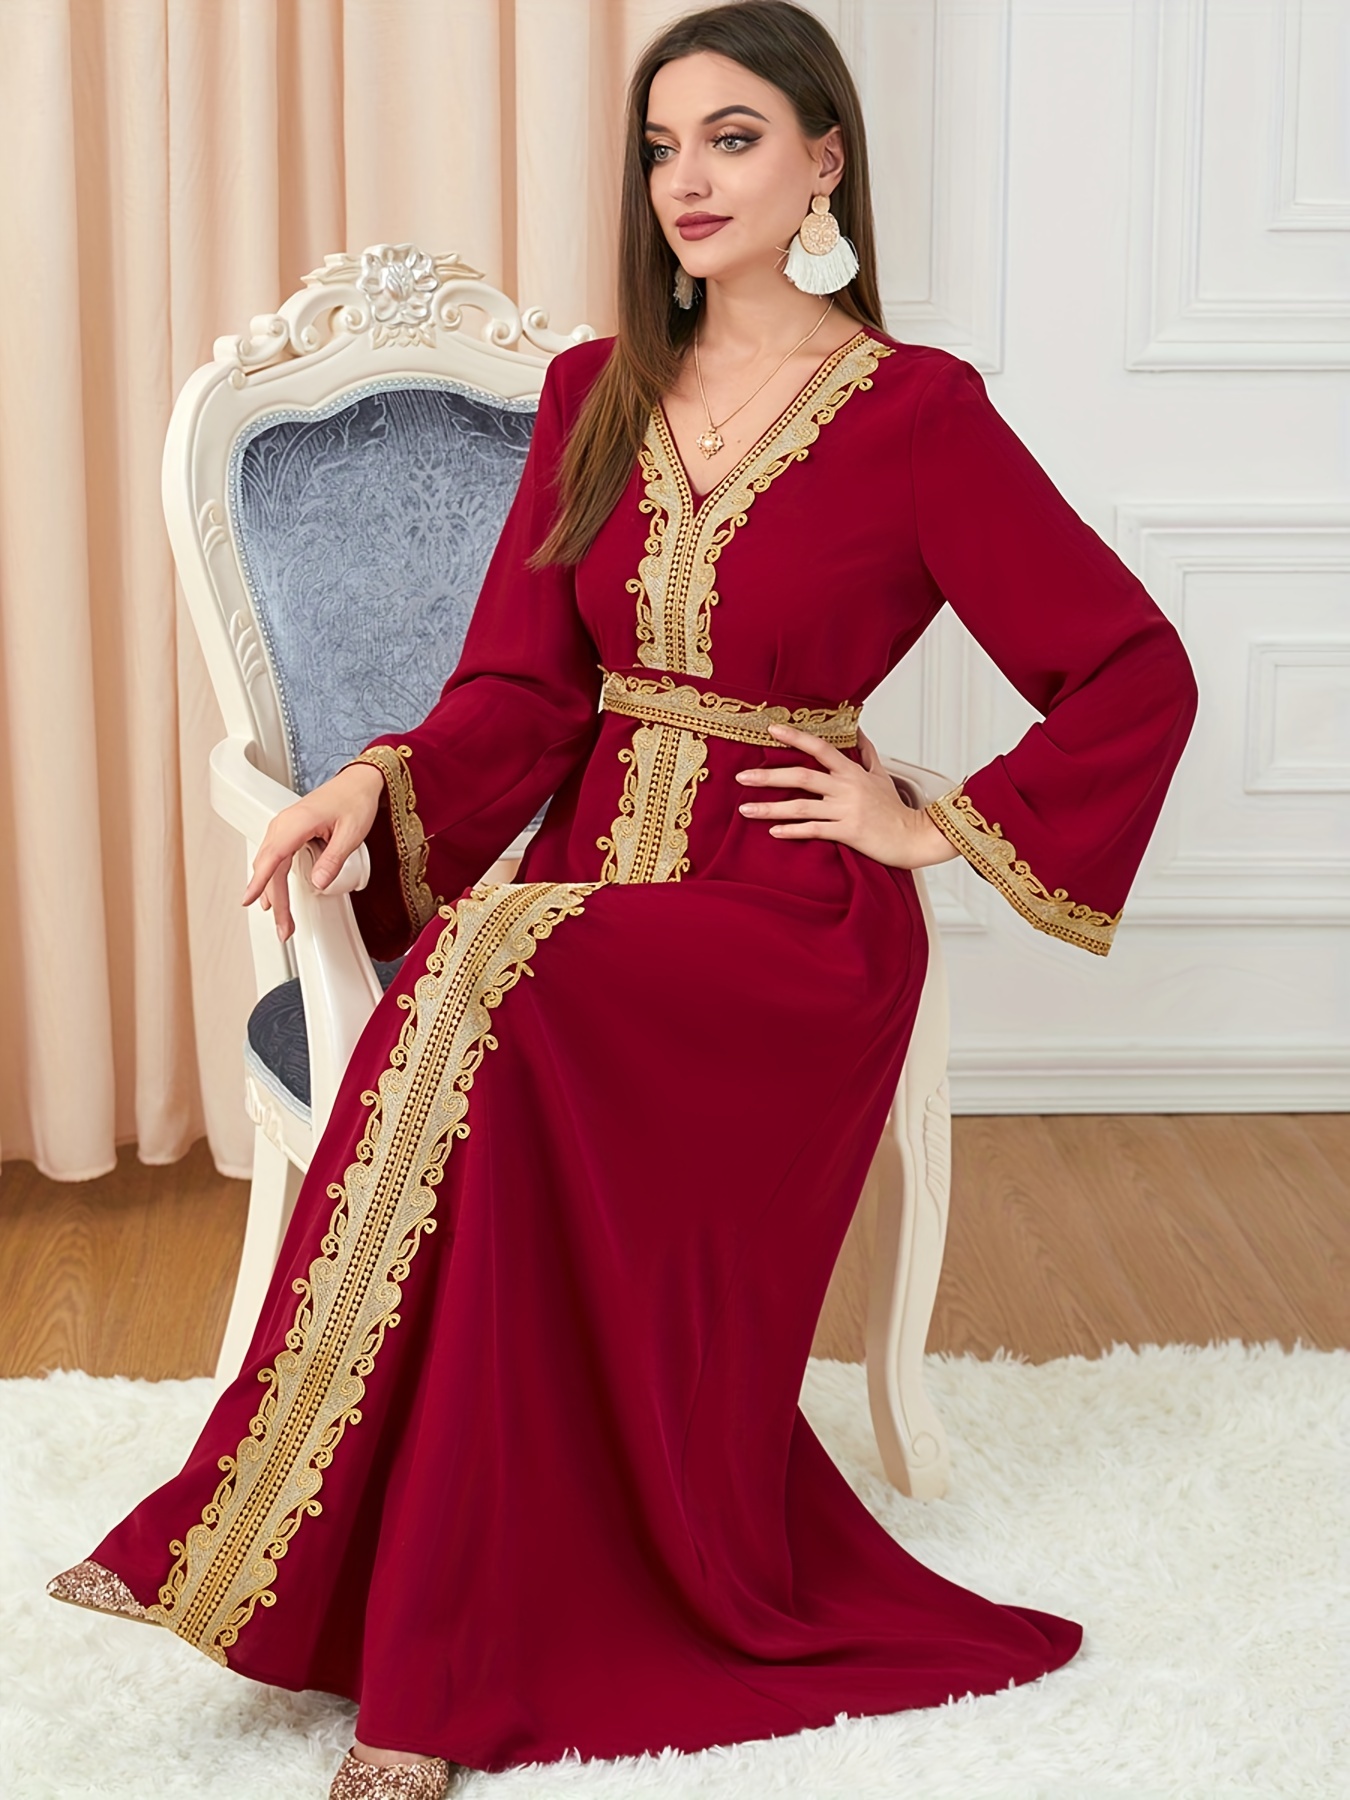 Vestido kaftan com acabamento em renda elegante vestido maxi